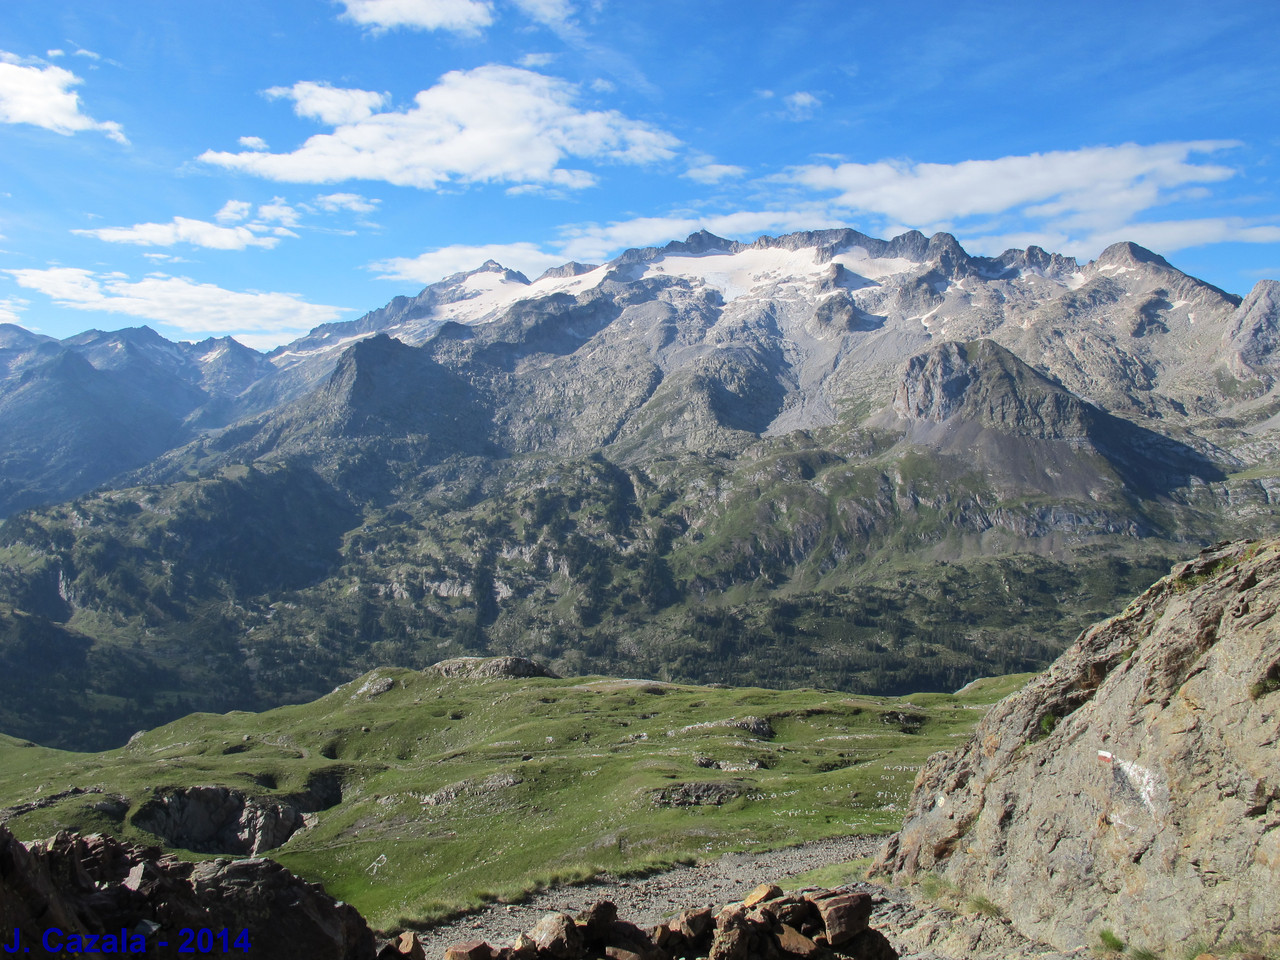 Paysage incontournable des Pyrénées : L'Aneto et la Maladeta depuis le Port de Vénasque